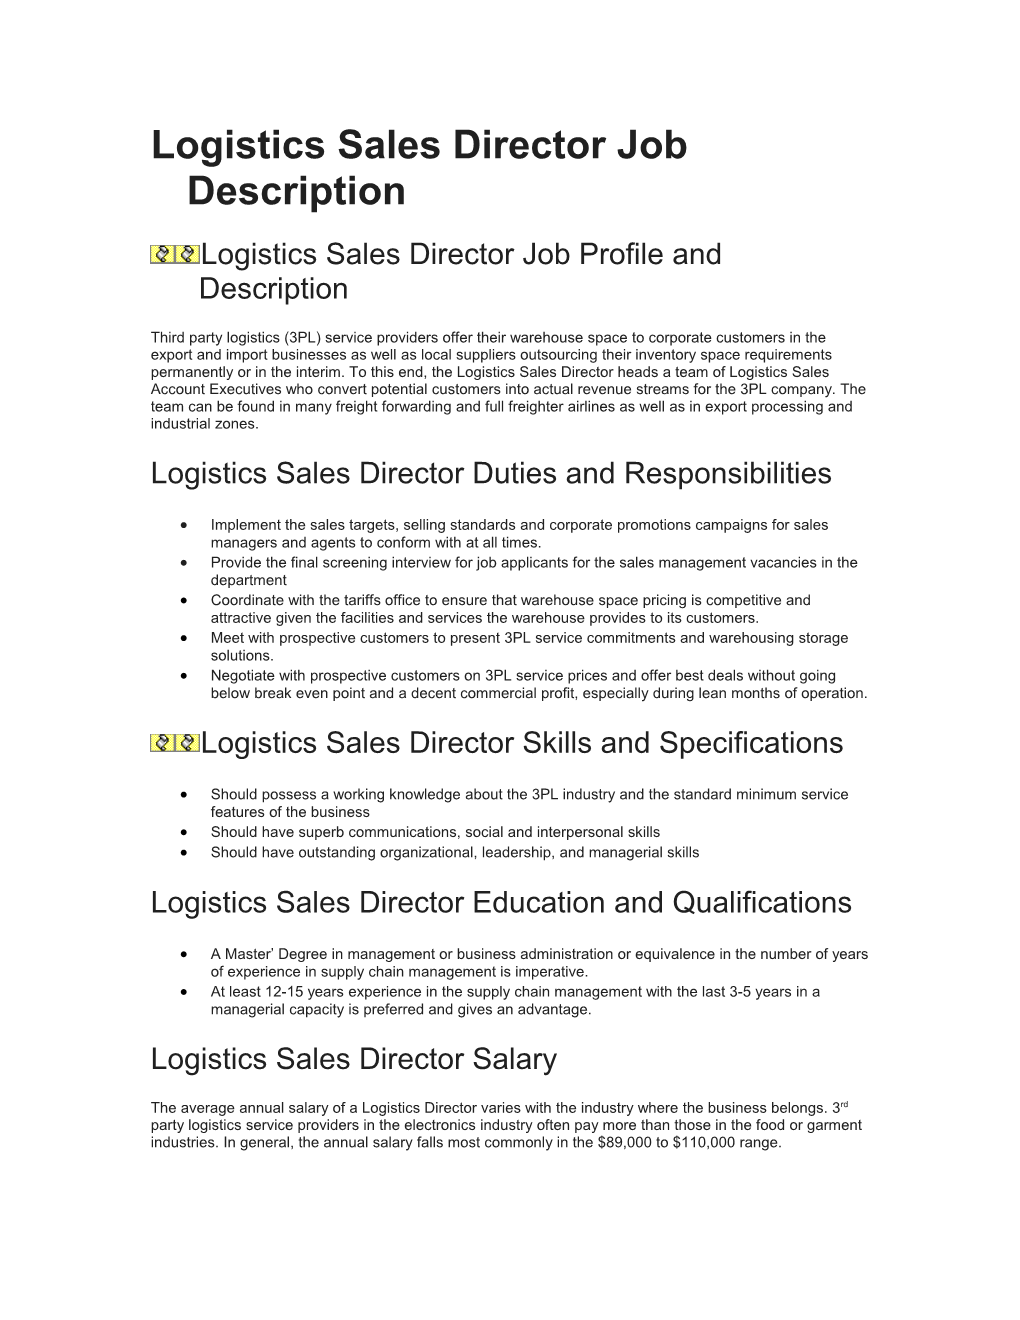 Logistics Sales Director Job Profile and Description